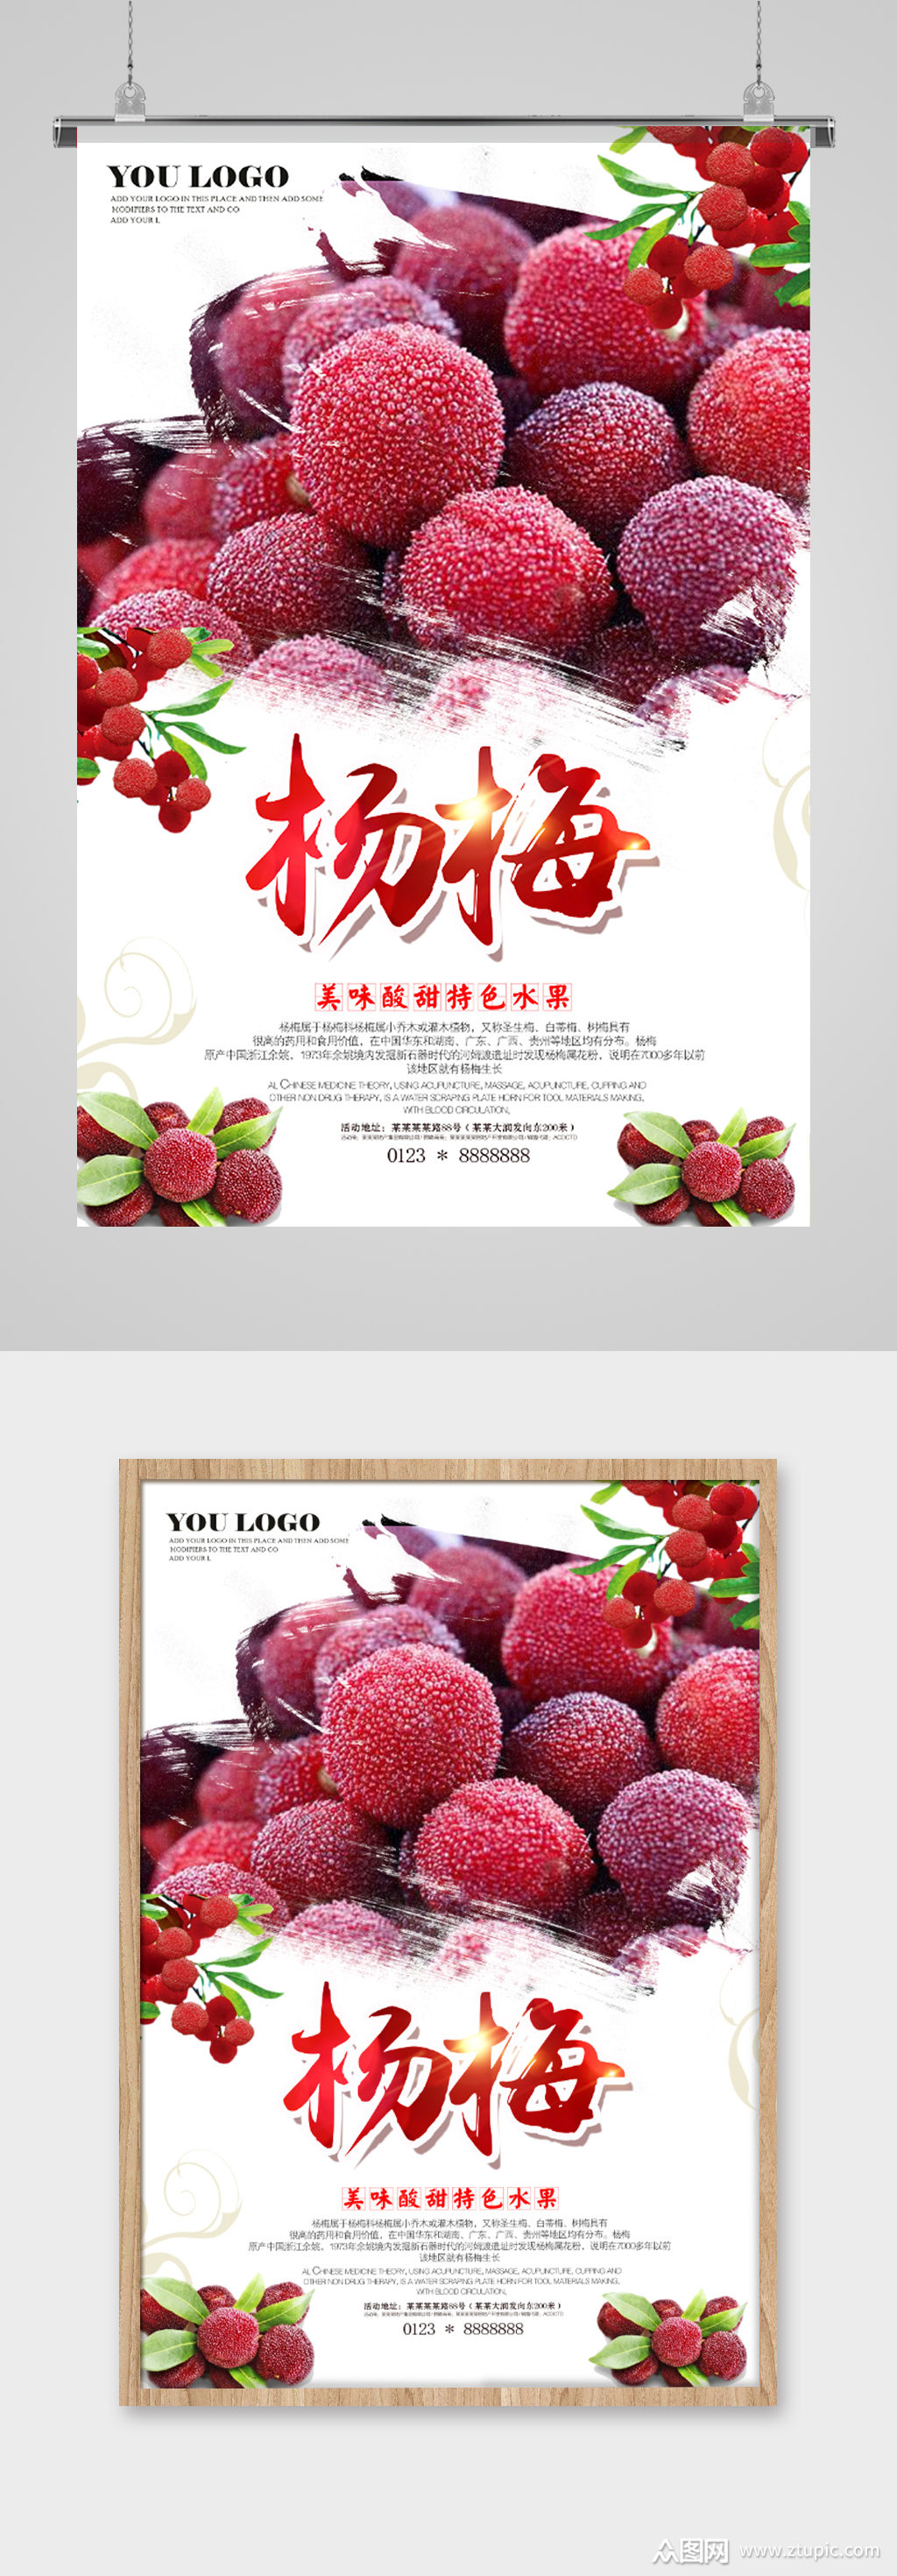 杨梅水果海报素材免费下载,本作品是由冬三井丶上传的原创平面广告